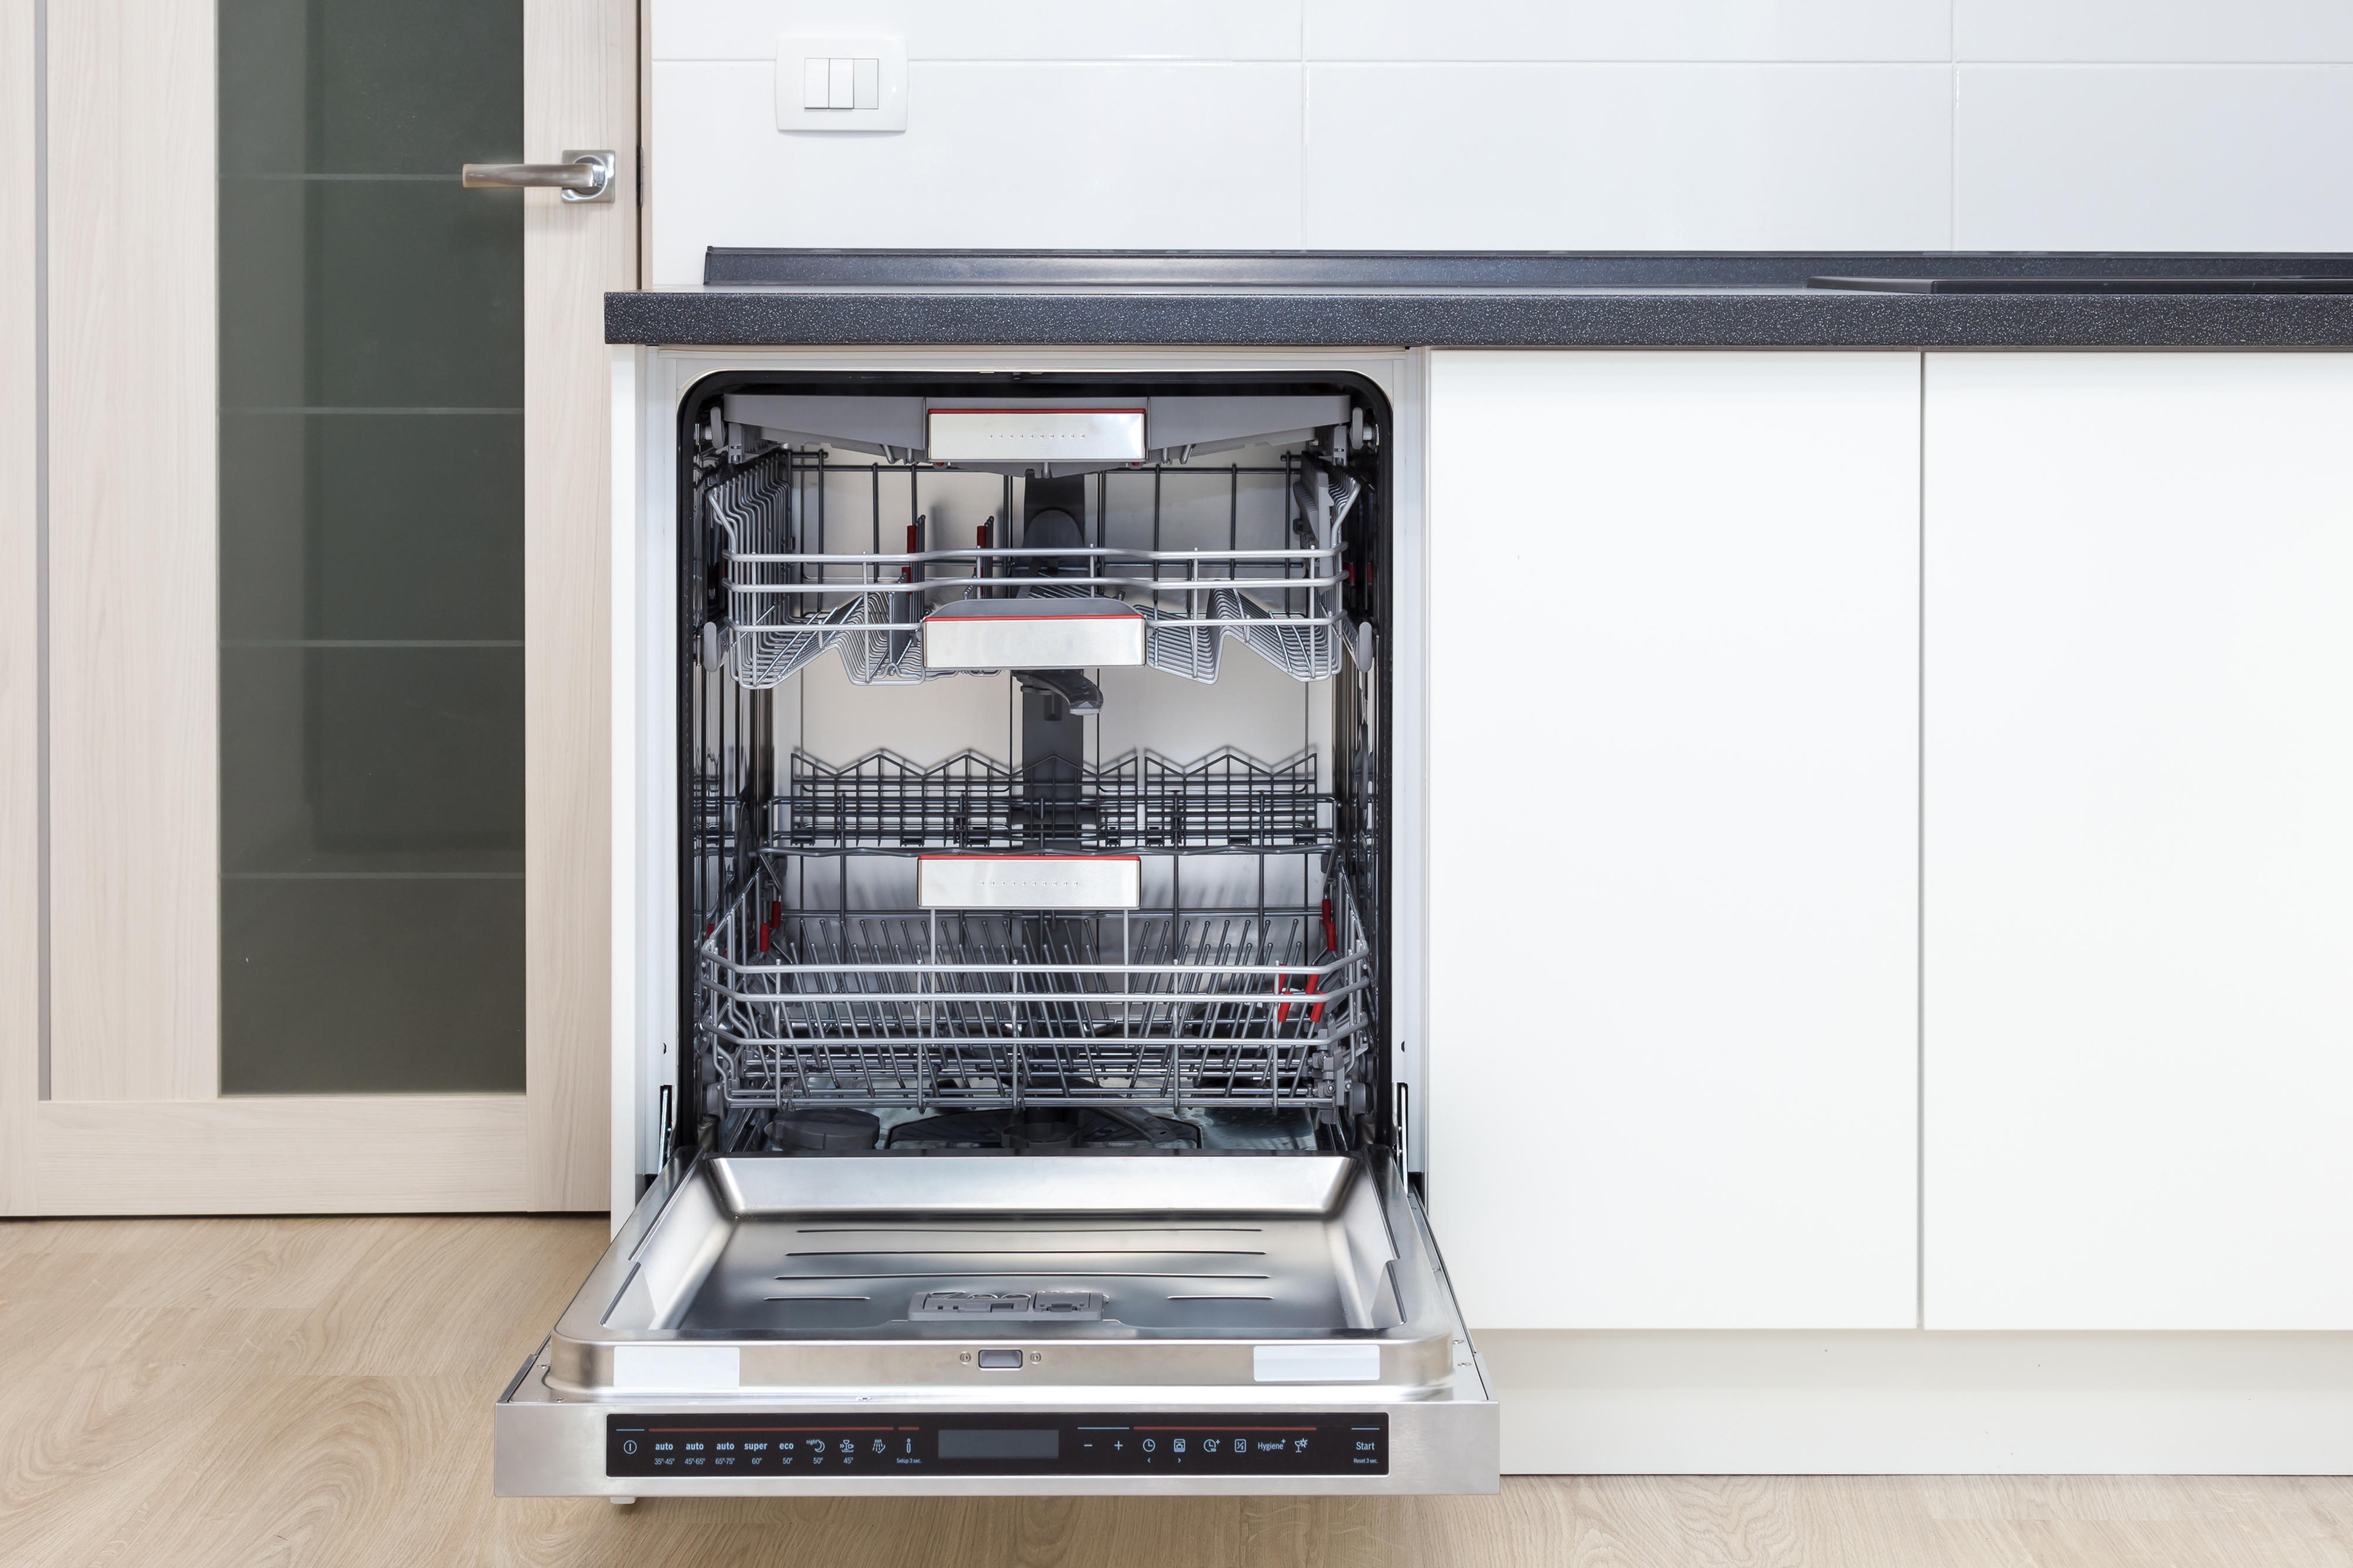 Bedste opvaskemaskine – find en opvaskemaskine bedst i test | Elgiganten